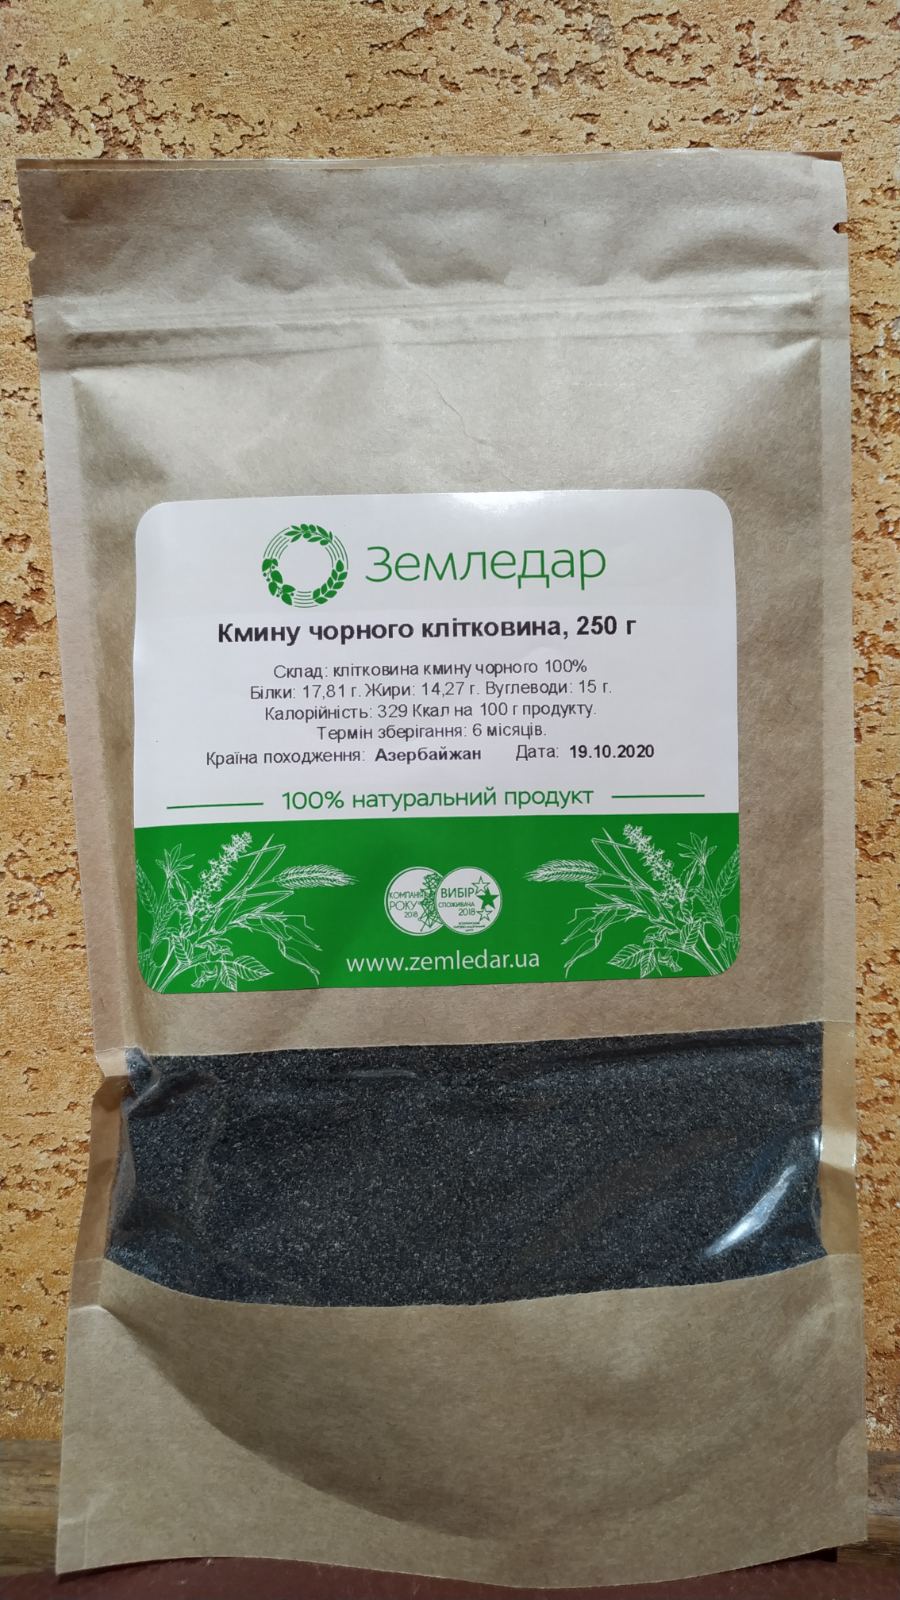 Клетчатка из семян Черного тмина 250 гр уникальный 100% натуральный продукт, Земледар, Ивано-Франковск